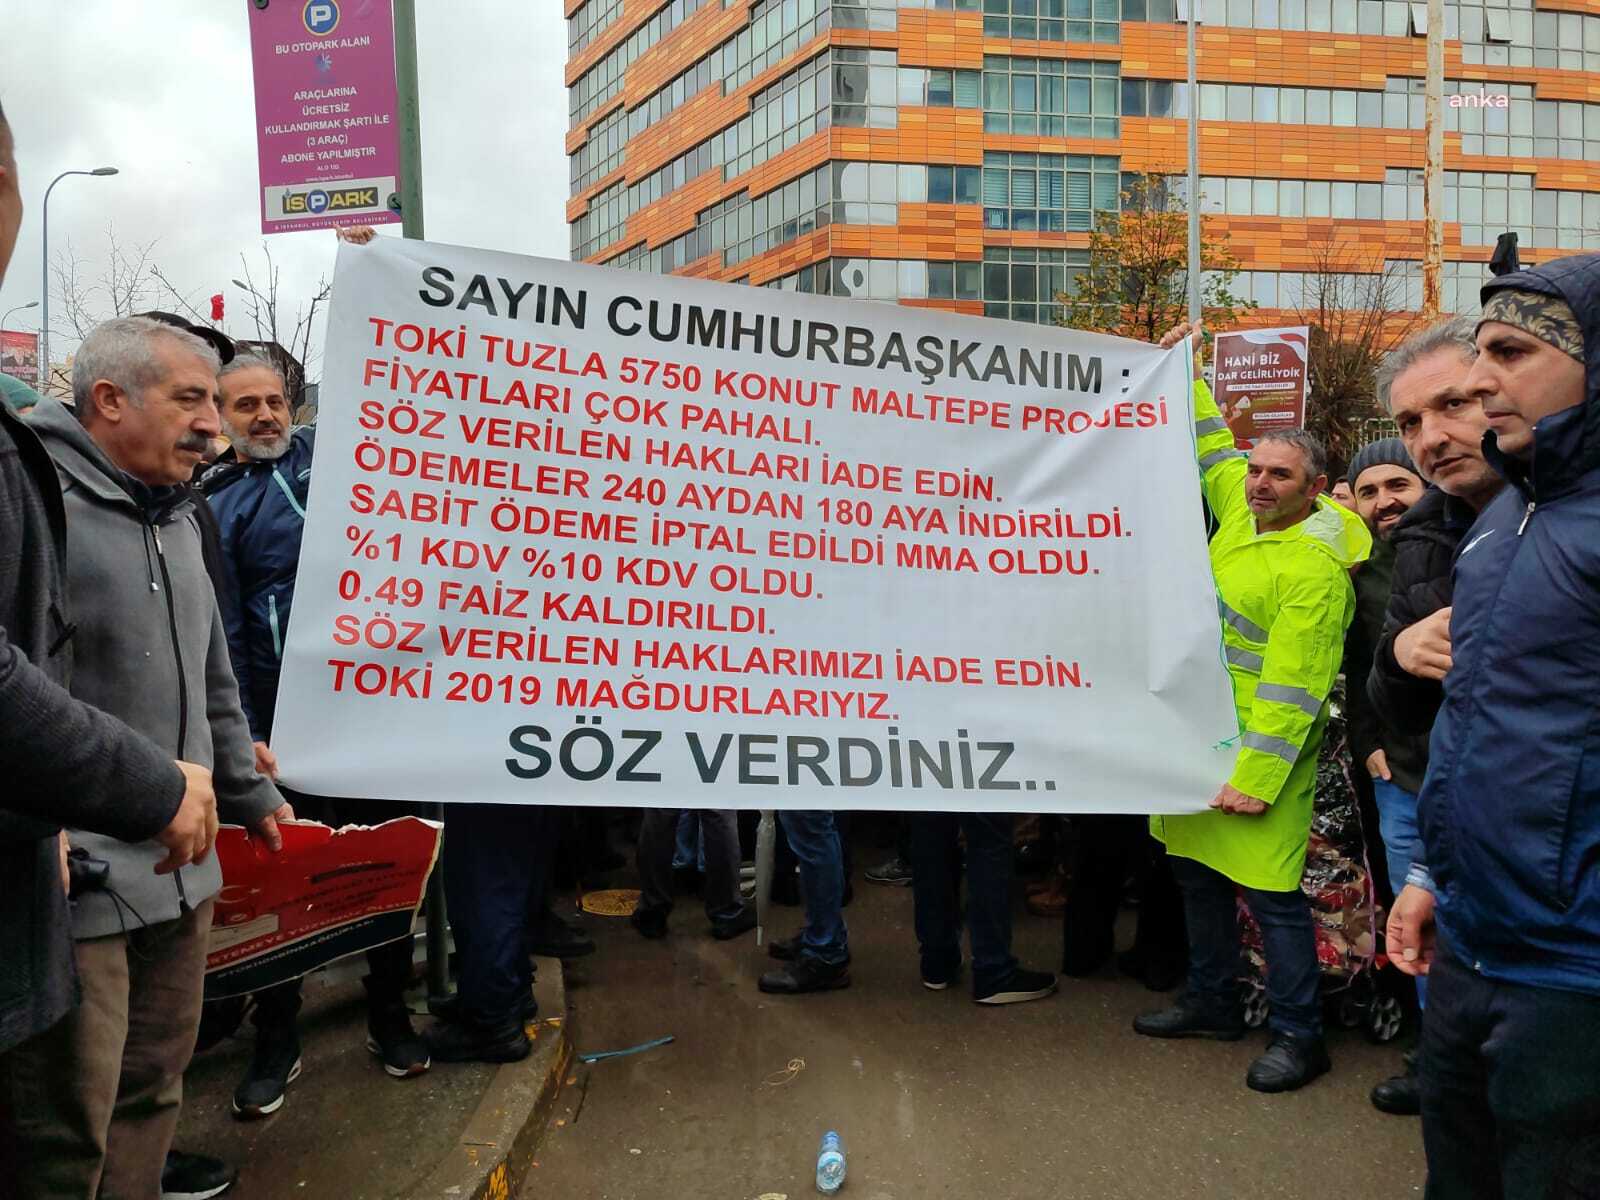 Toki Mağdurları İstanbul’da Eylemde! Akpartili Murat Kurum’un sözlerini yerine getirmesini bekliyor